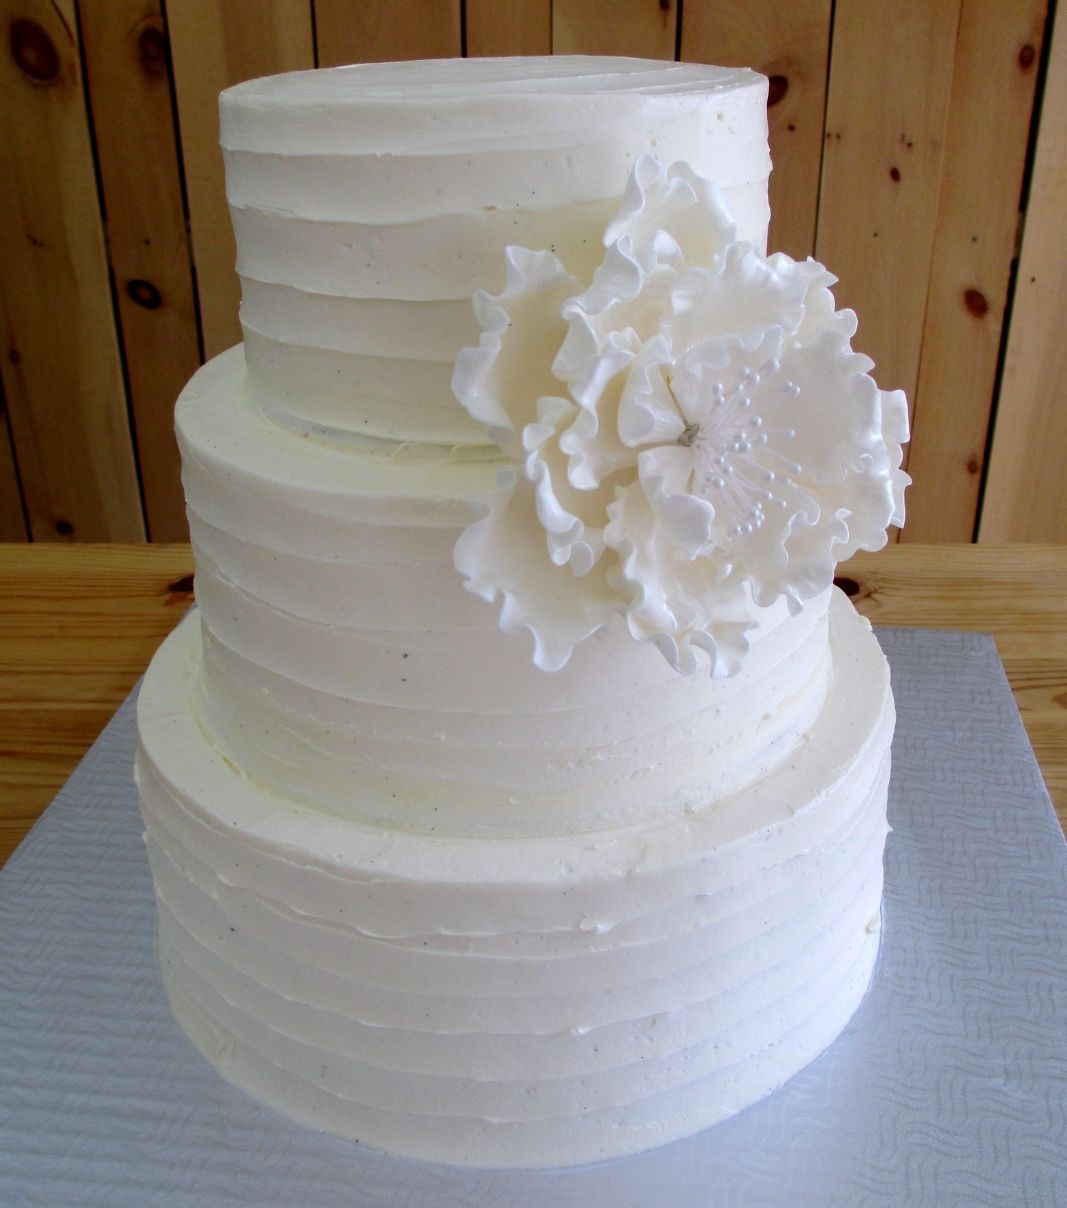 Gâteau de mariage: gâteau de 3 étages avec une couverture effet coup de spatule à la crème au beurre et décoré d'une fleur en sucre fondant sculptée à la main.